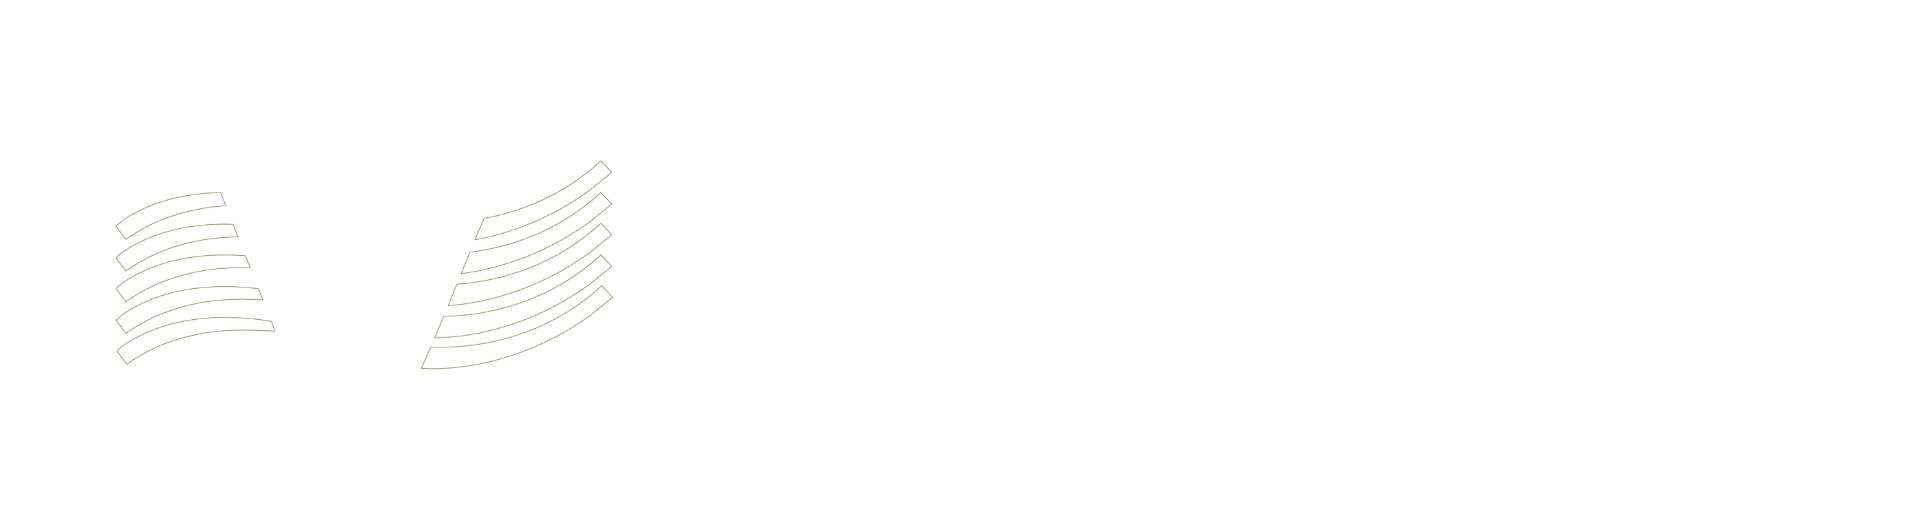 Villagran & pliego – Soluciones para el Retiro